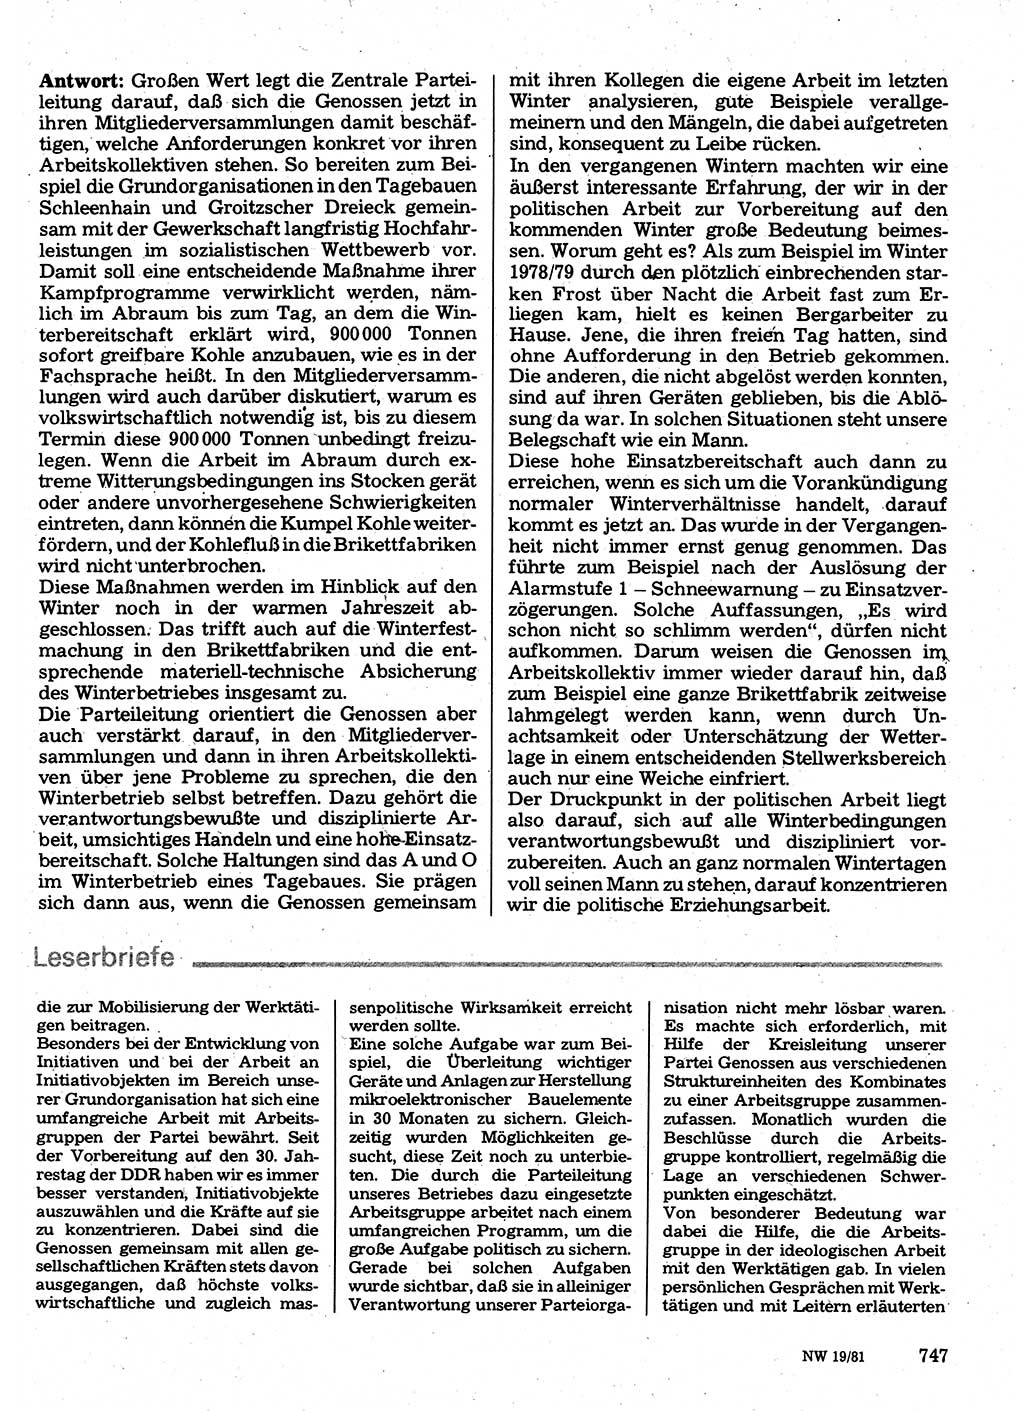 Neuer Weg (NW), Organ des Zentralkomitees (ZK) der SED (Sozialistische Einheitspartei Deutschlands) für Fragen des Parteilebens, 36. Jahrgang [Deutsche Demokratische Republik (DDR)] 1981, Seite 747 (NW ZK SED DDR 1981, S. 747)